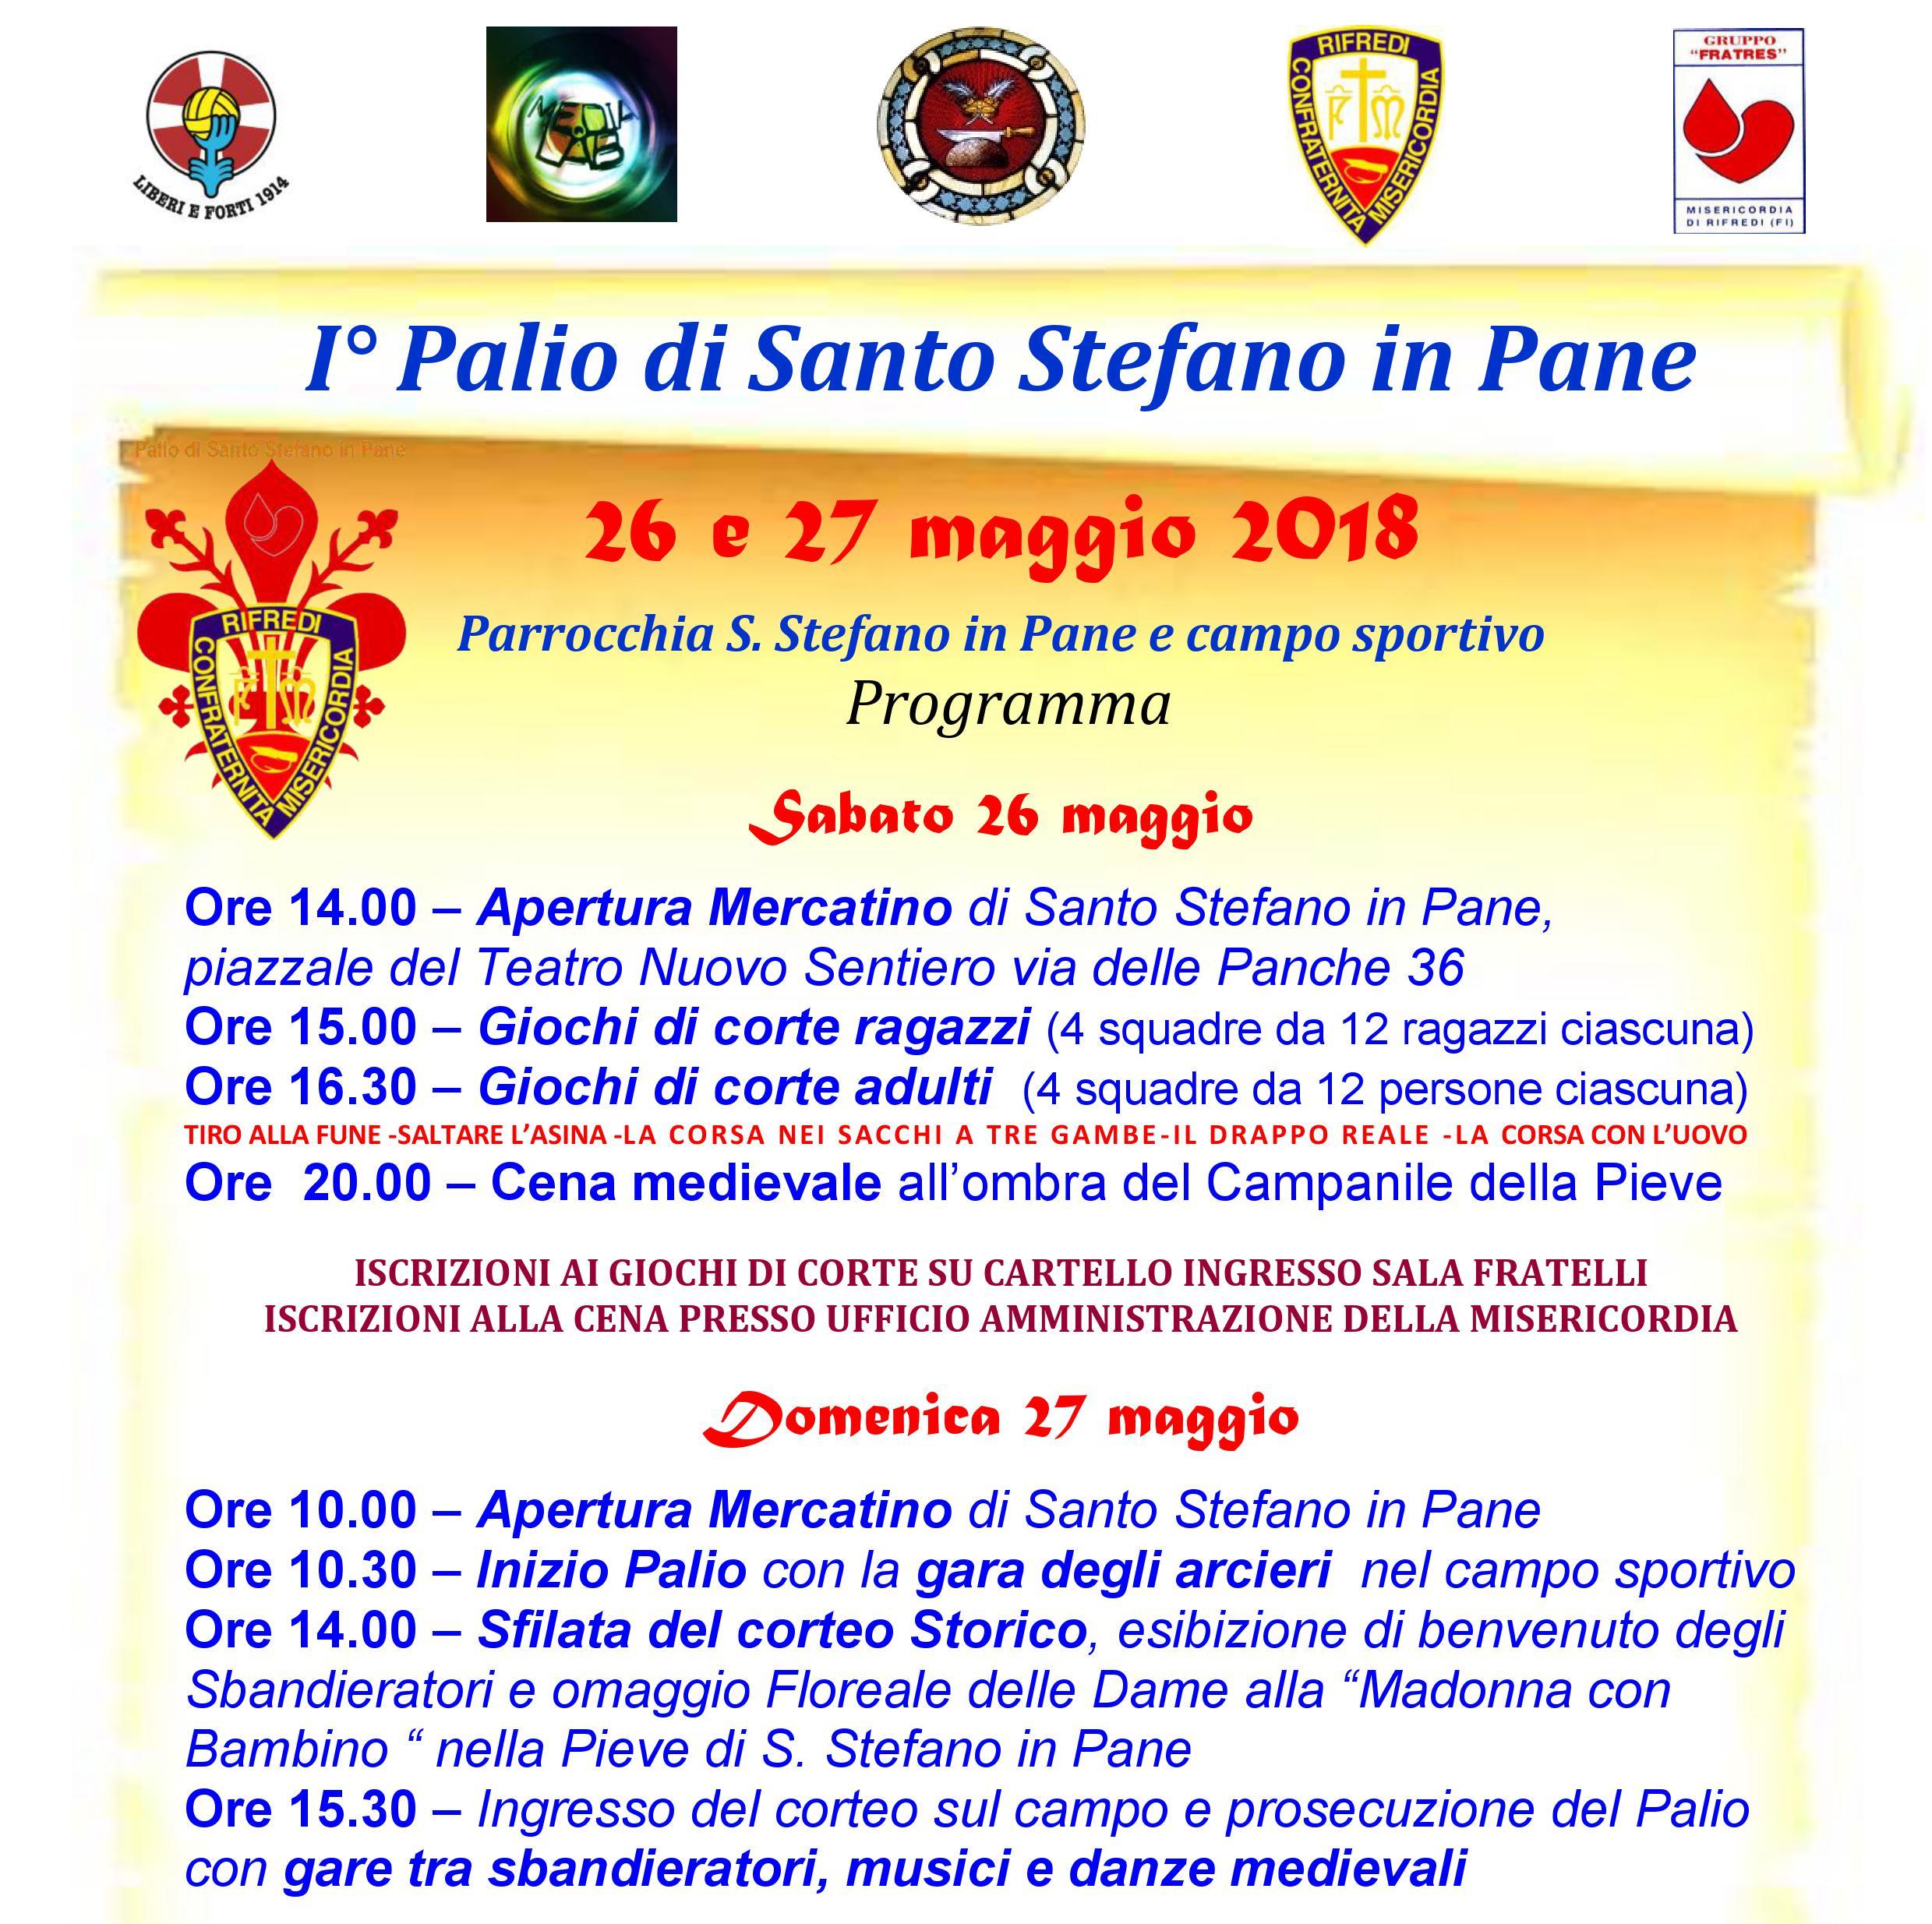 Programma Palio Santo Stefano in Pane